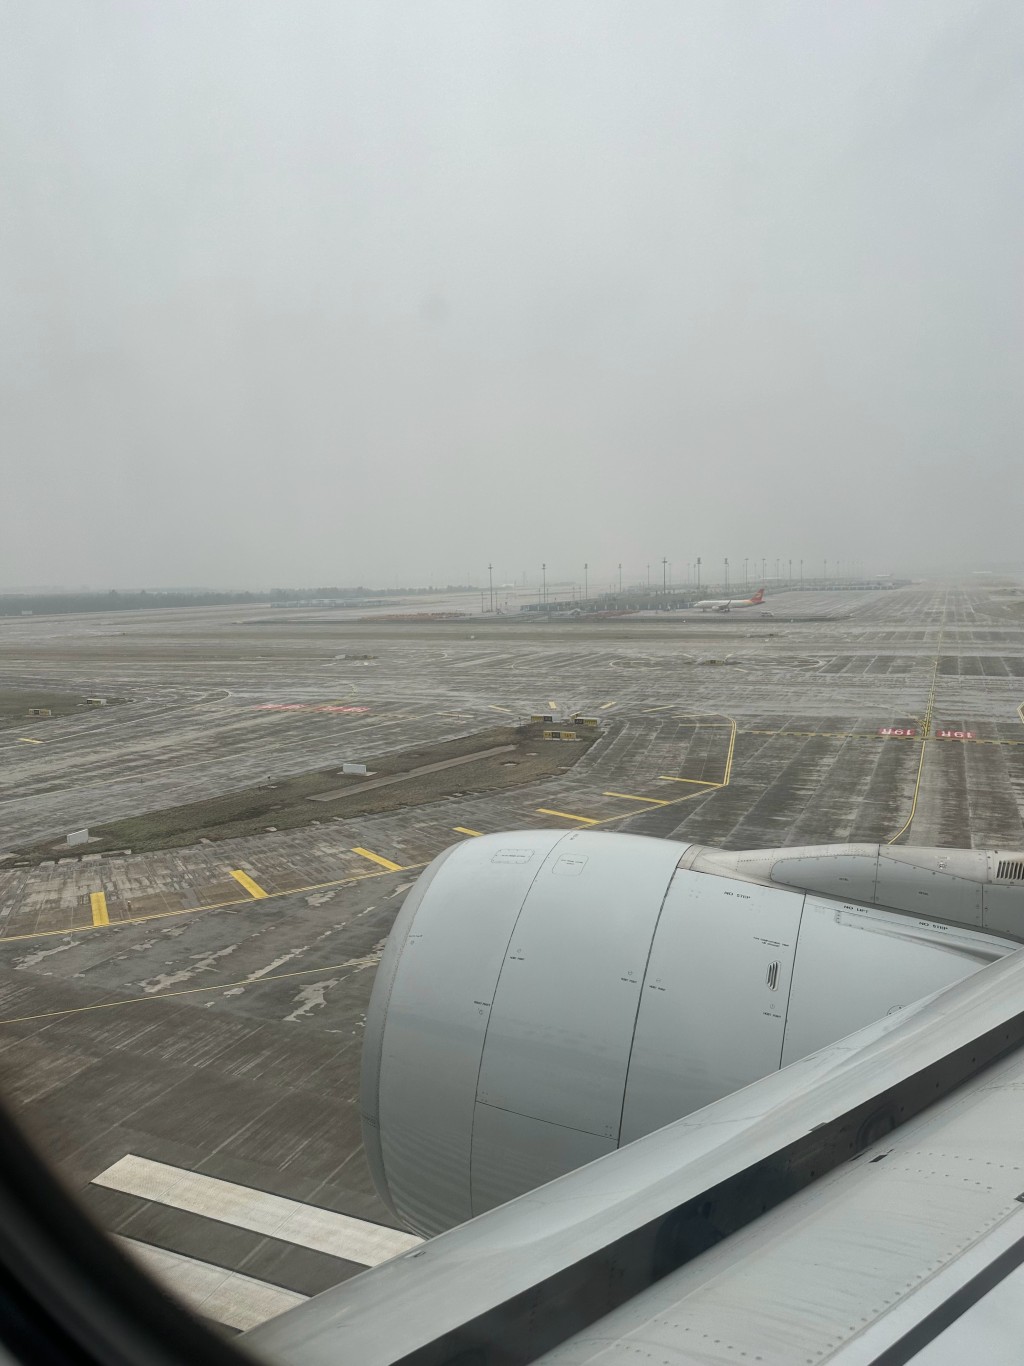 網傳大興機場今日停機坪的已沒有水浸。